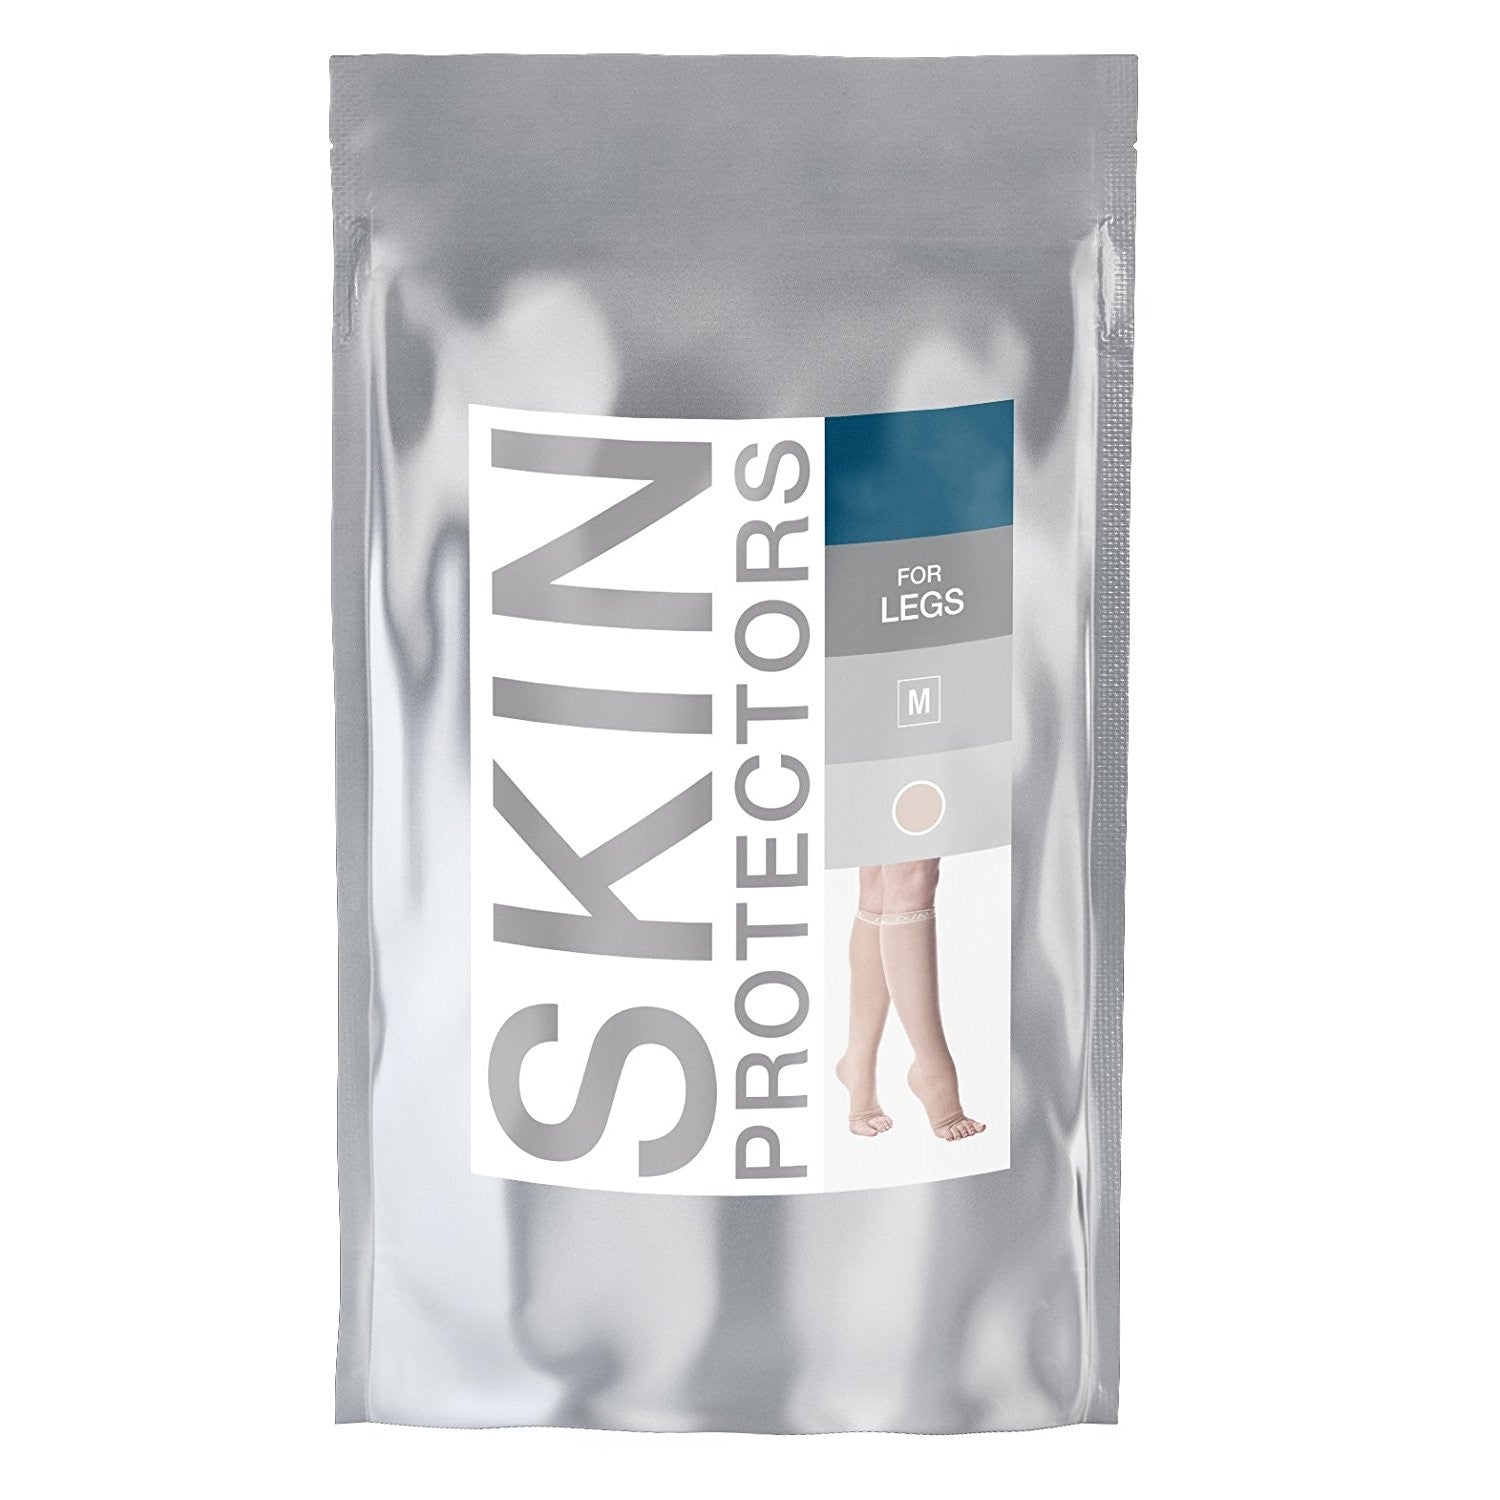 Skin Protectors For Legs - Tan, Pair (2pc)